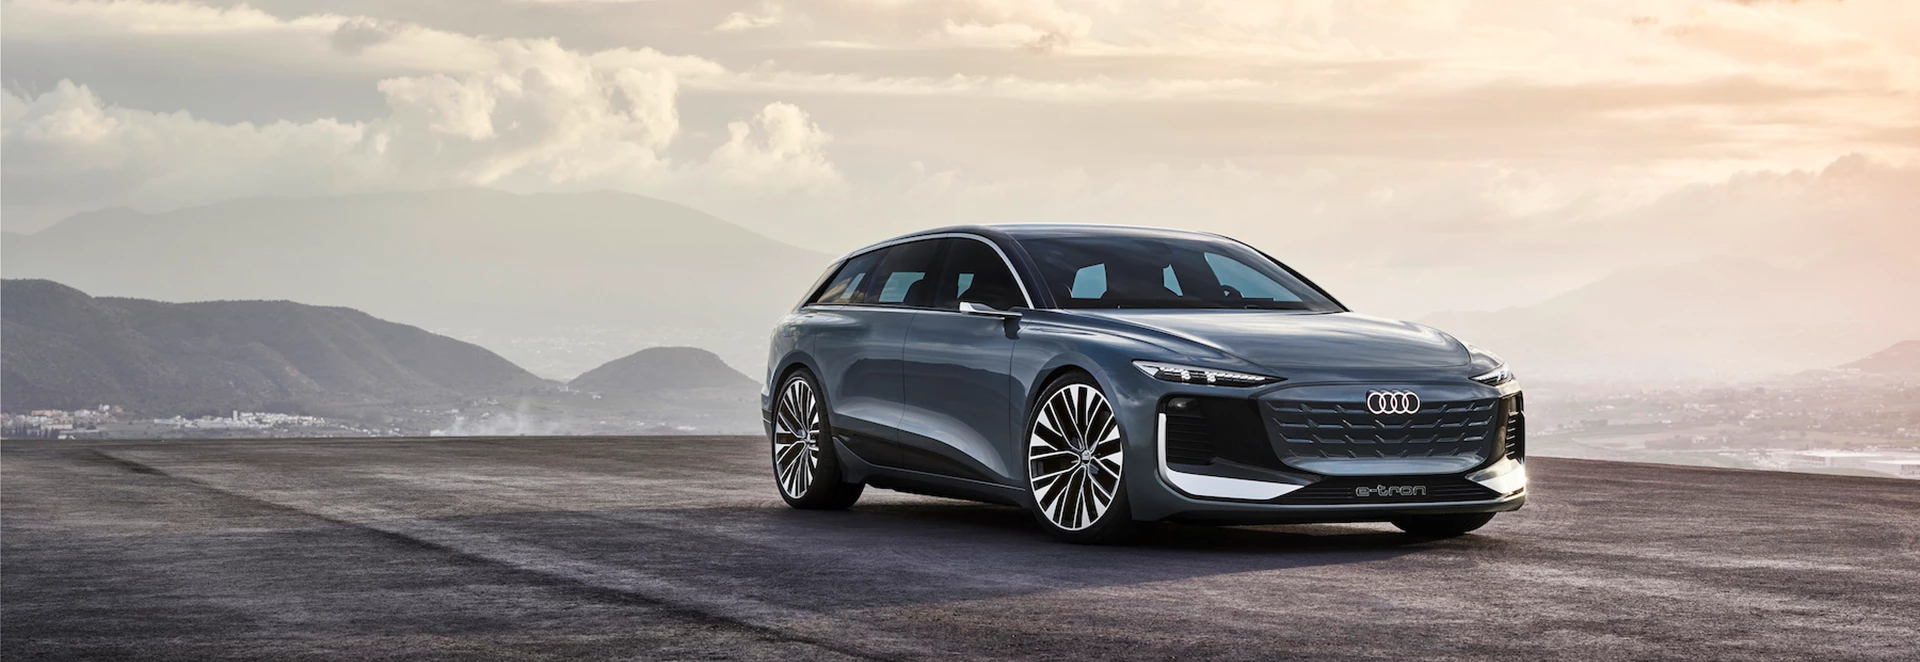 Audi previews new electric estate car with A6 e-tron Avant concept 